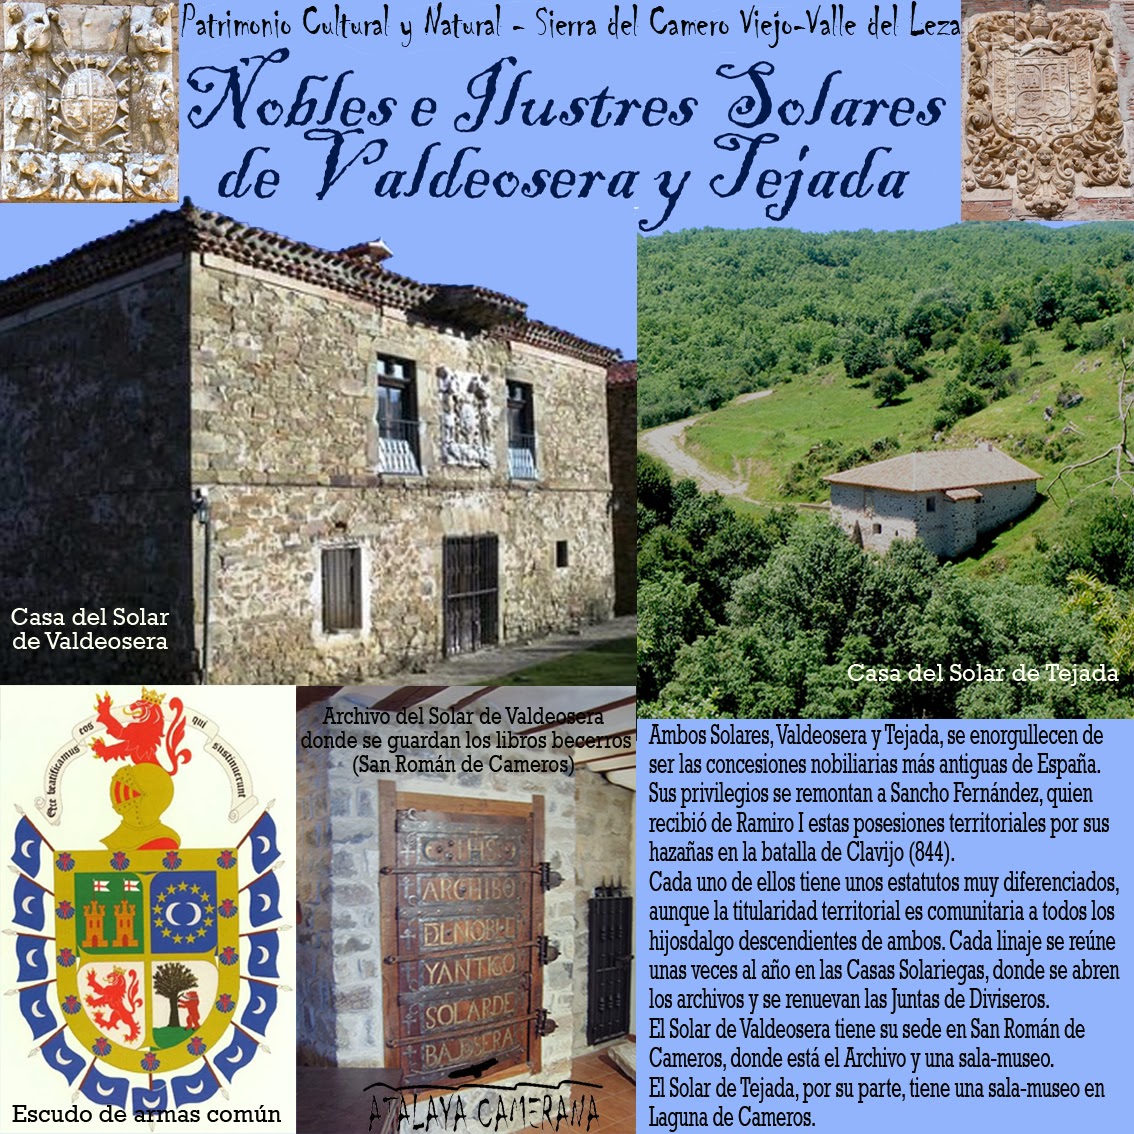 Sierra del Camero Viejo - Valle del Leza. Patrimonio Cultural y Natural. Solares de Valdeosera y Tejada.